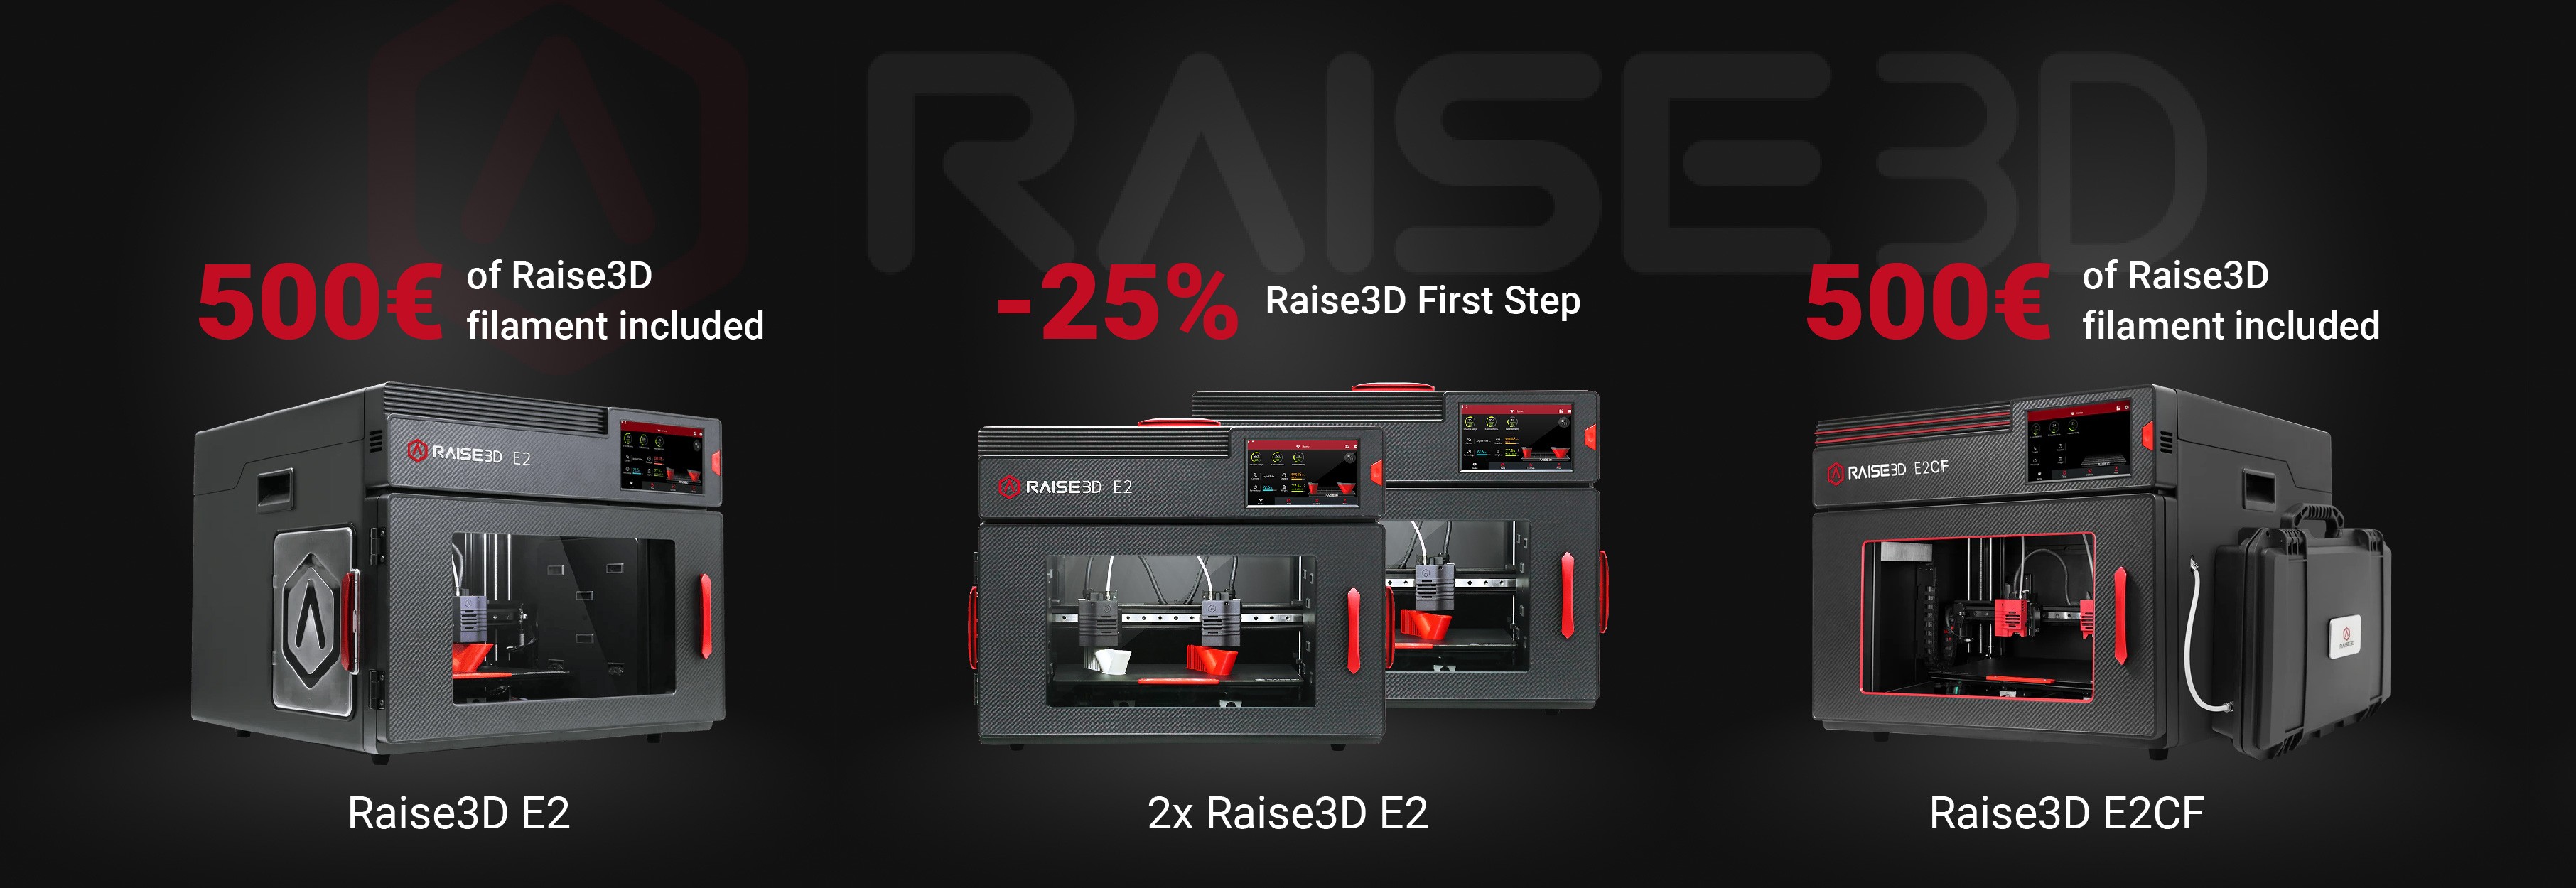 Raise3D E2 & E2CF offer